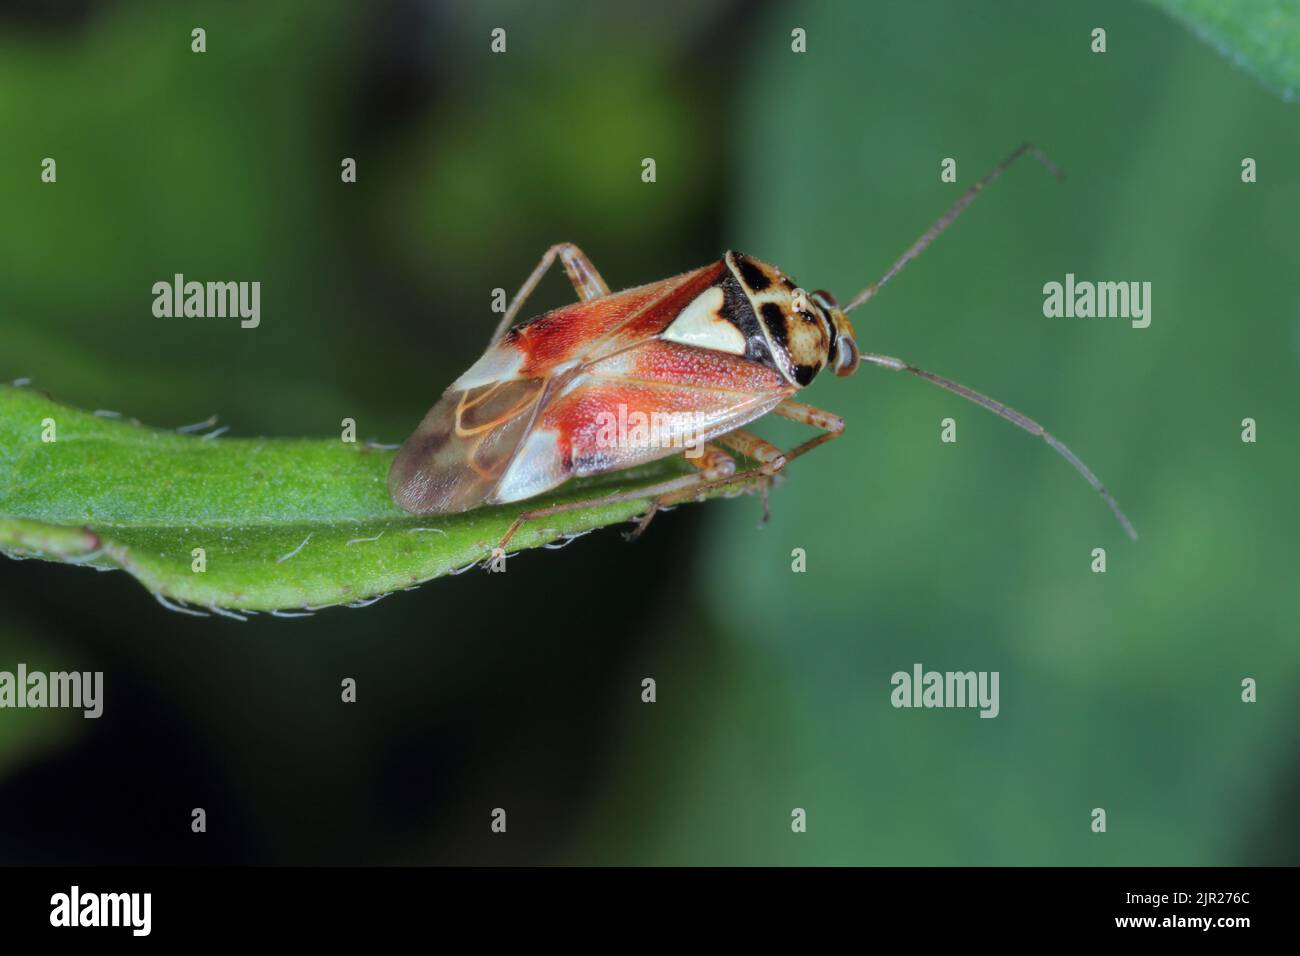 Lygus Bug bilden die Familie Miridae Stockfoto